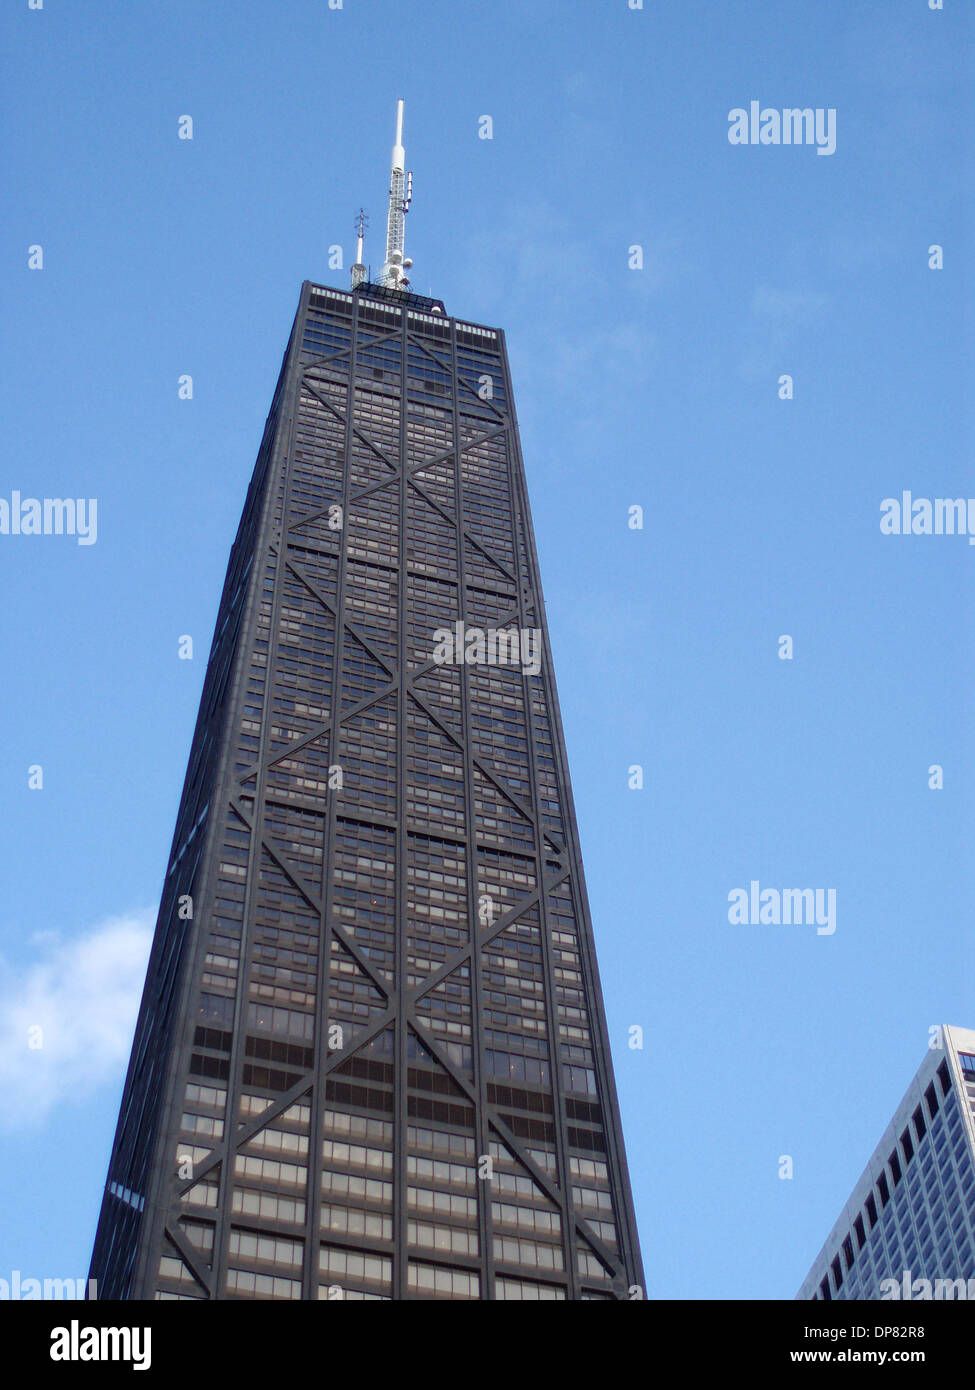 Oct 14, 2006 ; Chicago, IL, USA, connu localement comme "Big John", le John Hancock Center de Chicago est probablement le gratte-ciel préféré. Les 100 étages, achevée en 1969, a un design remarquable, avec l'énorme X-braces desservant à la fois structurelles et un visuel d'un but. Visuellement, il donne l'impression de stabilité et il déplace l'oeil loin de la taille des fenêtres. La const Banque D'Images